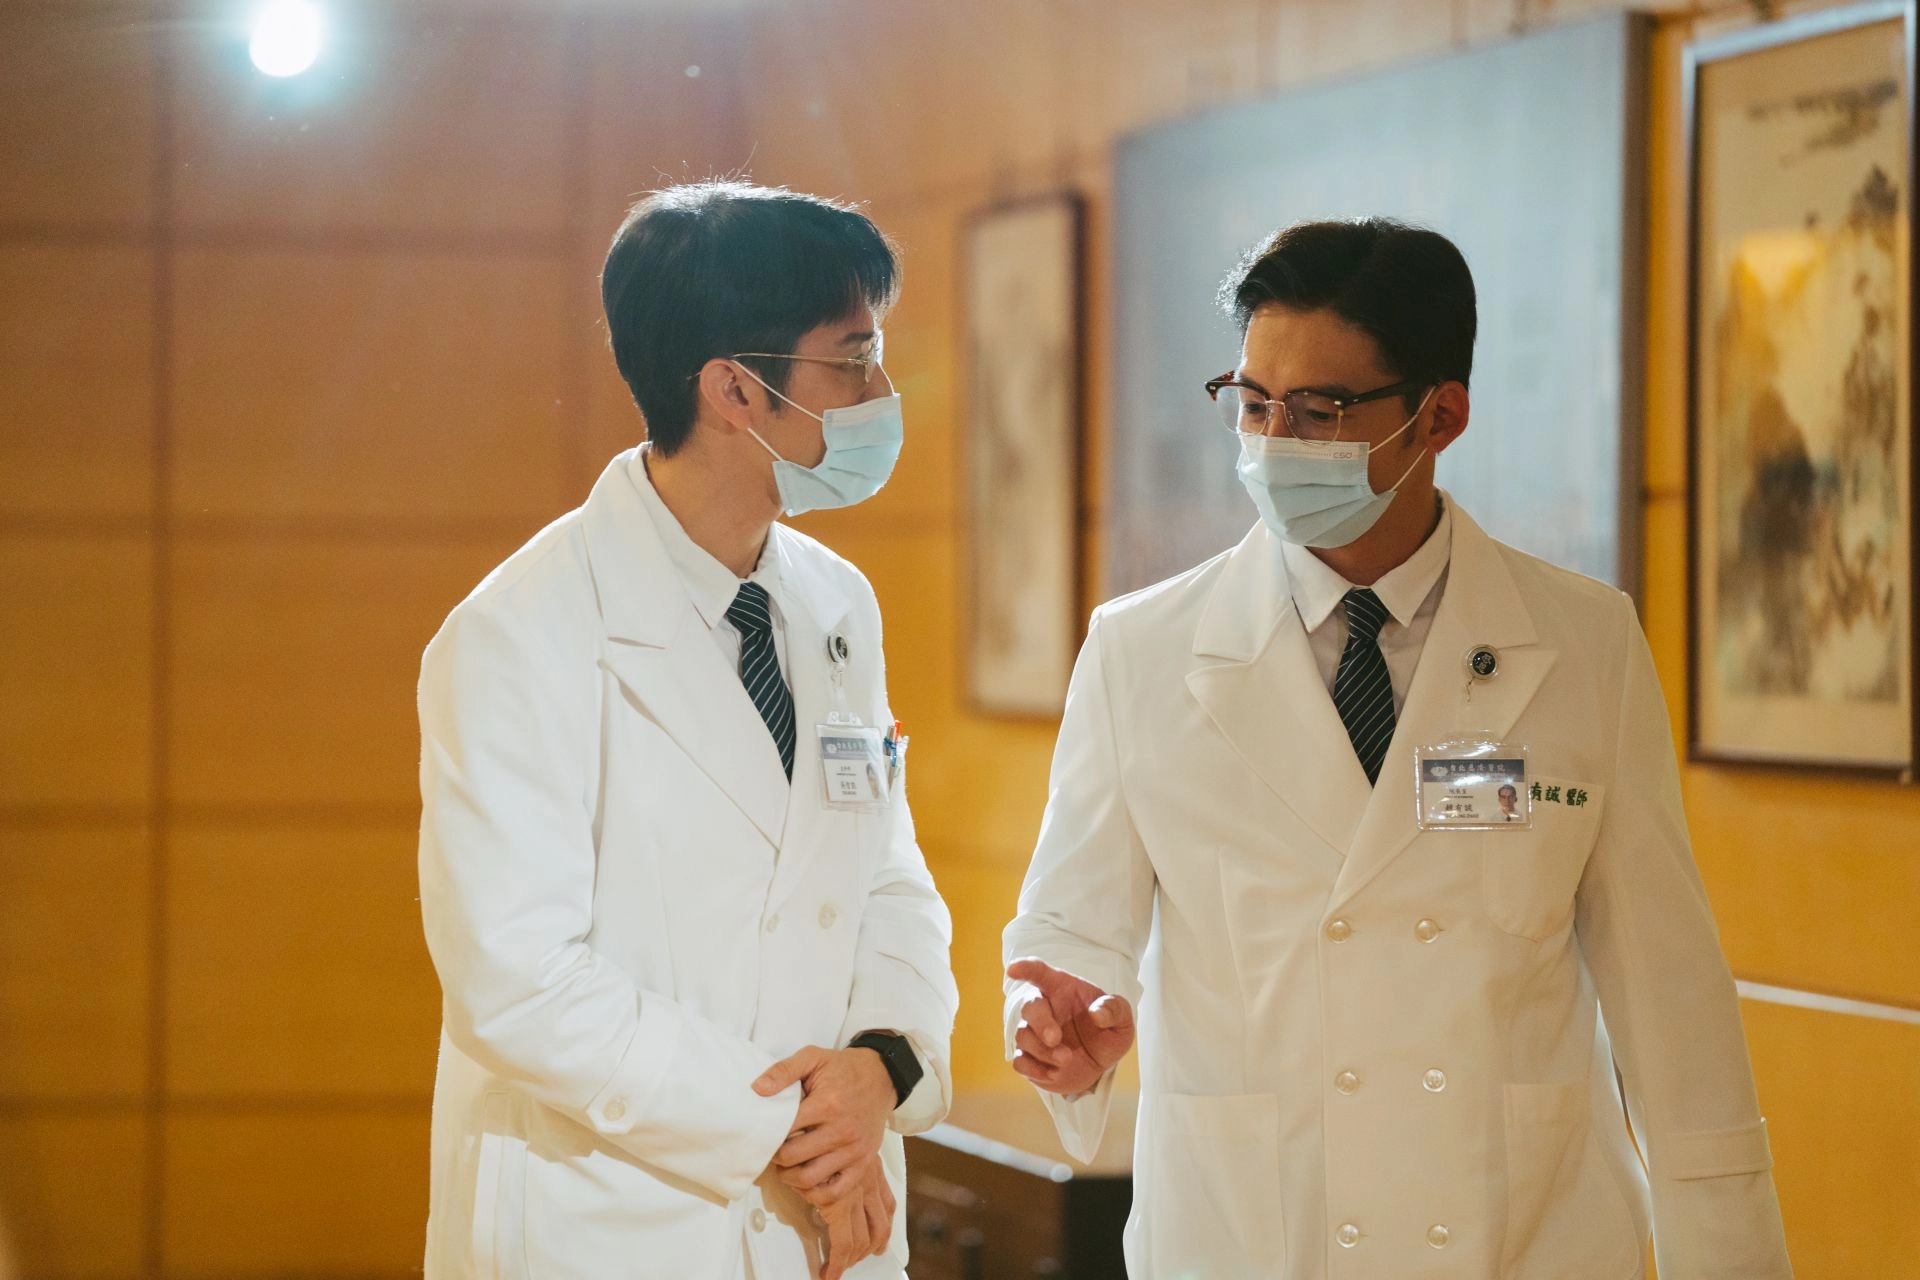 大愛劇《打怪任務》胡宇威(左)與温昇豪(右)演出醫生與院長立場各有不同